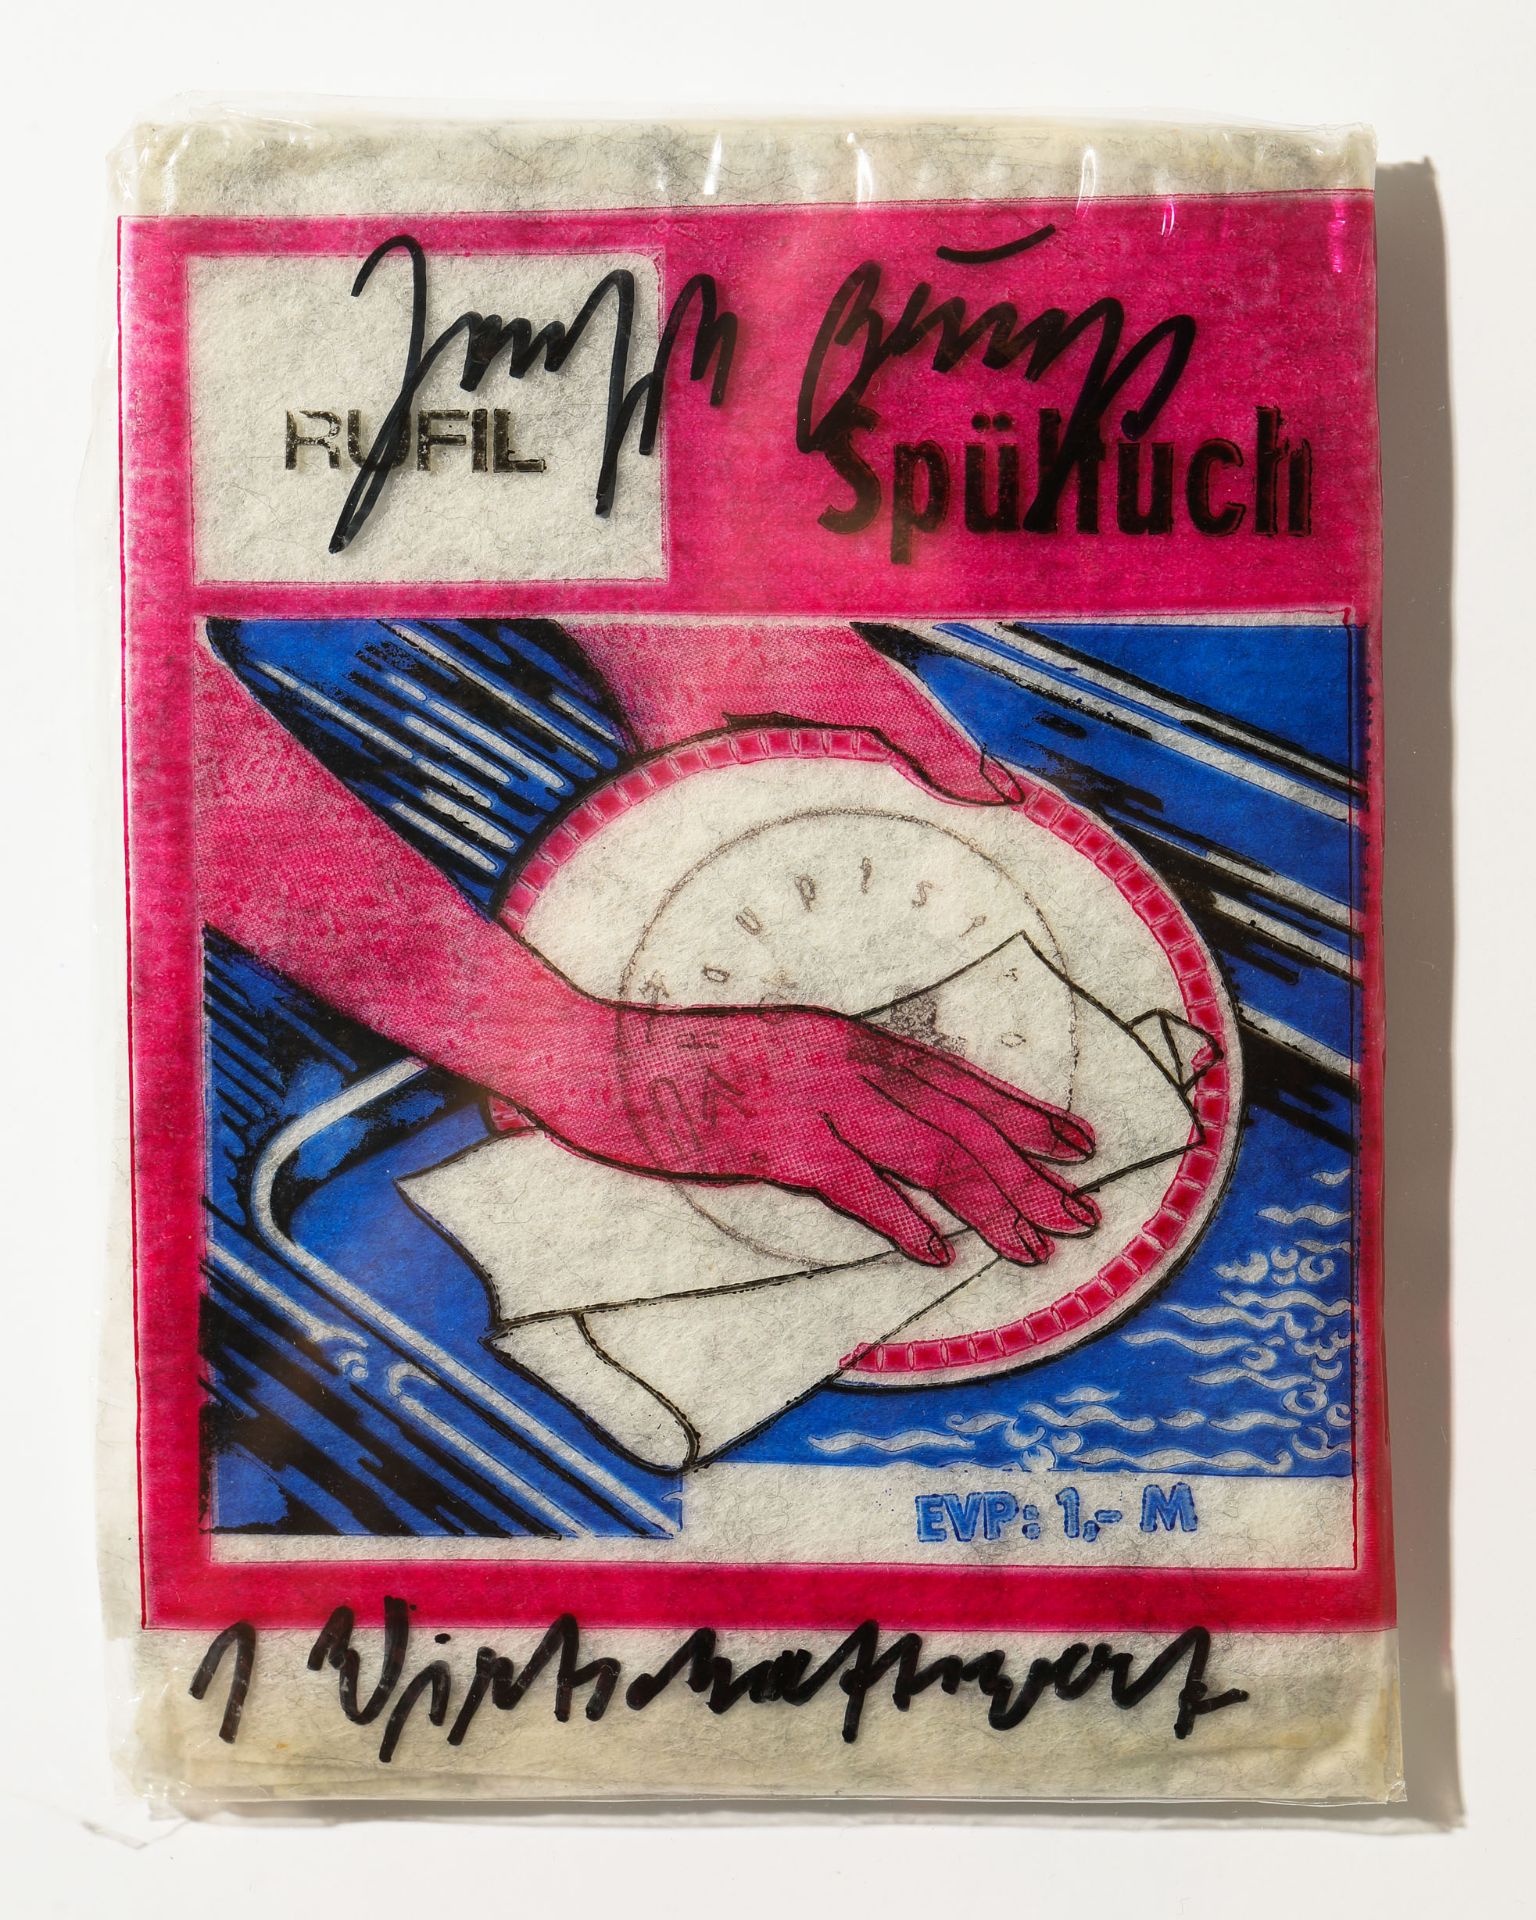 Joseph Beuys*, Wirtschaftswert Dishcloth + certificate Edition Staeck